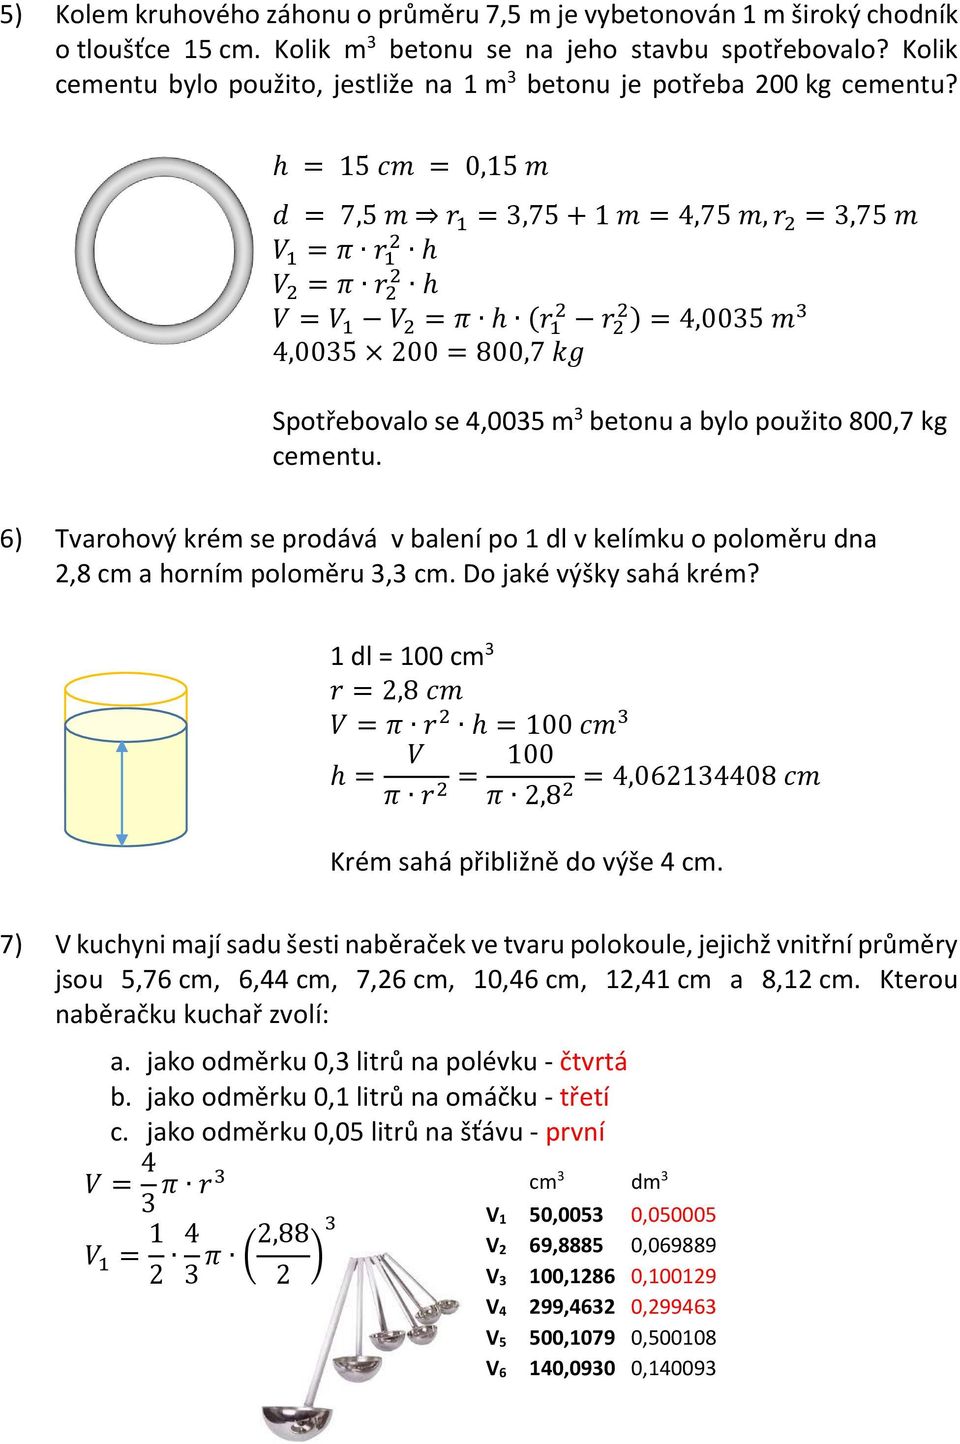 h = 15 cm = 0,15 m d = 7,5 m r 1 = 3,75 + 1 m = 4,75 m, r = 3,75 m V 1 = π r 1 h V = π r h V = V 1 V = π h (r 1 r ) = 4,0035 m 3 4,0035 00 = 800,7 kg Spotřebovalo se 4,0035 m 3 betonu a bylo použito